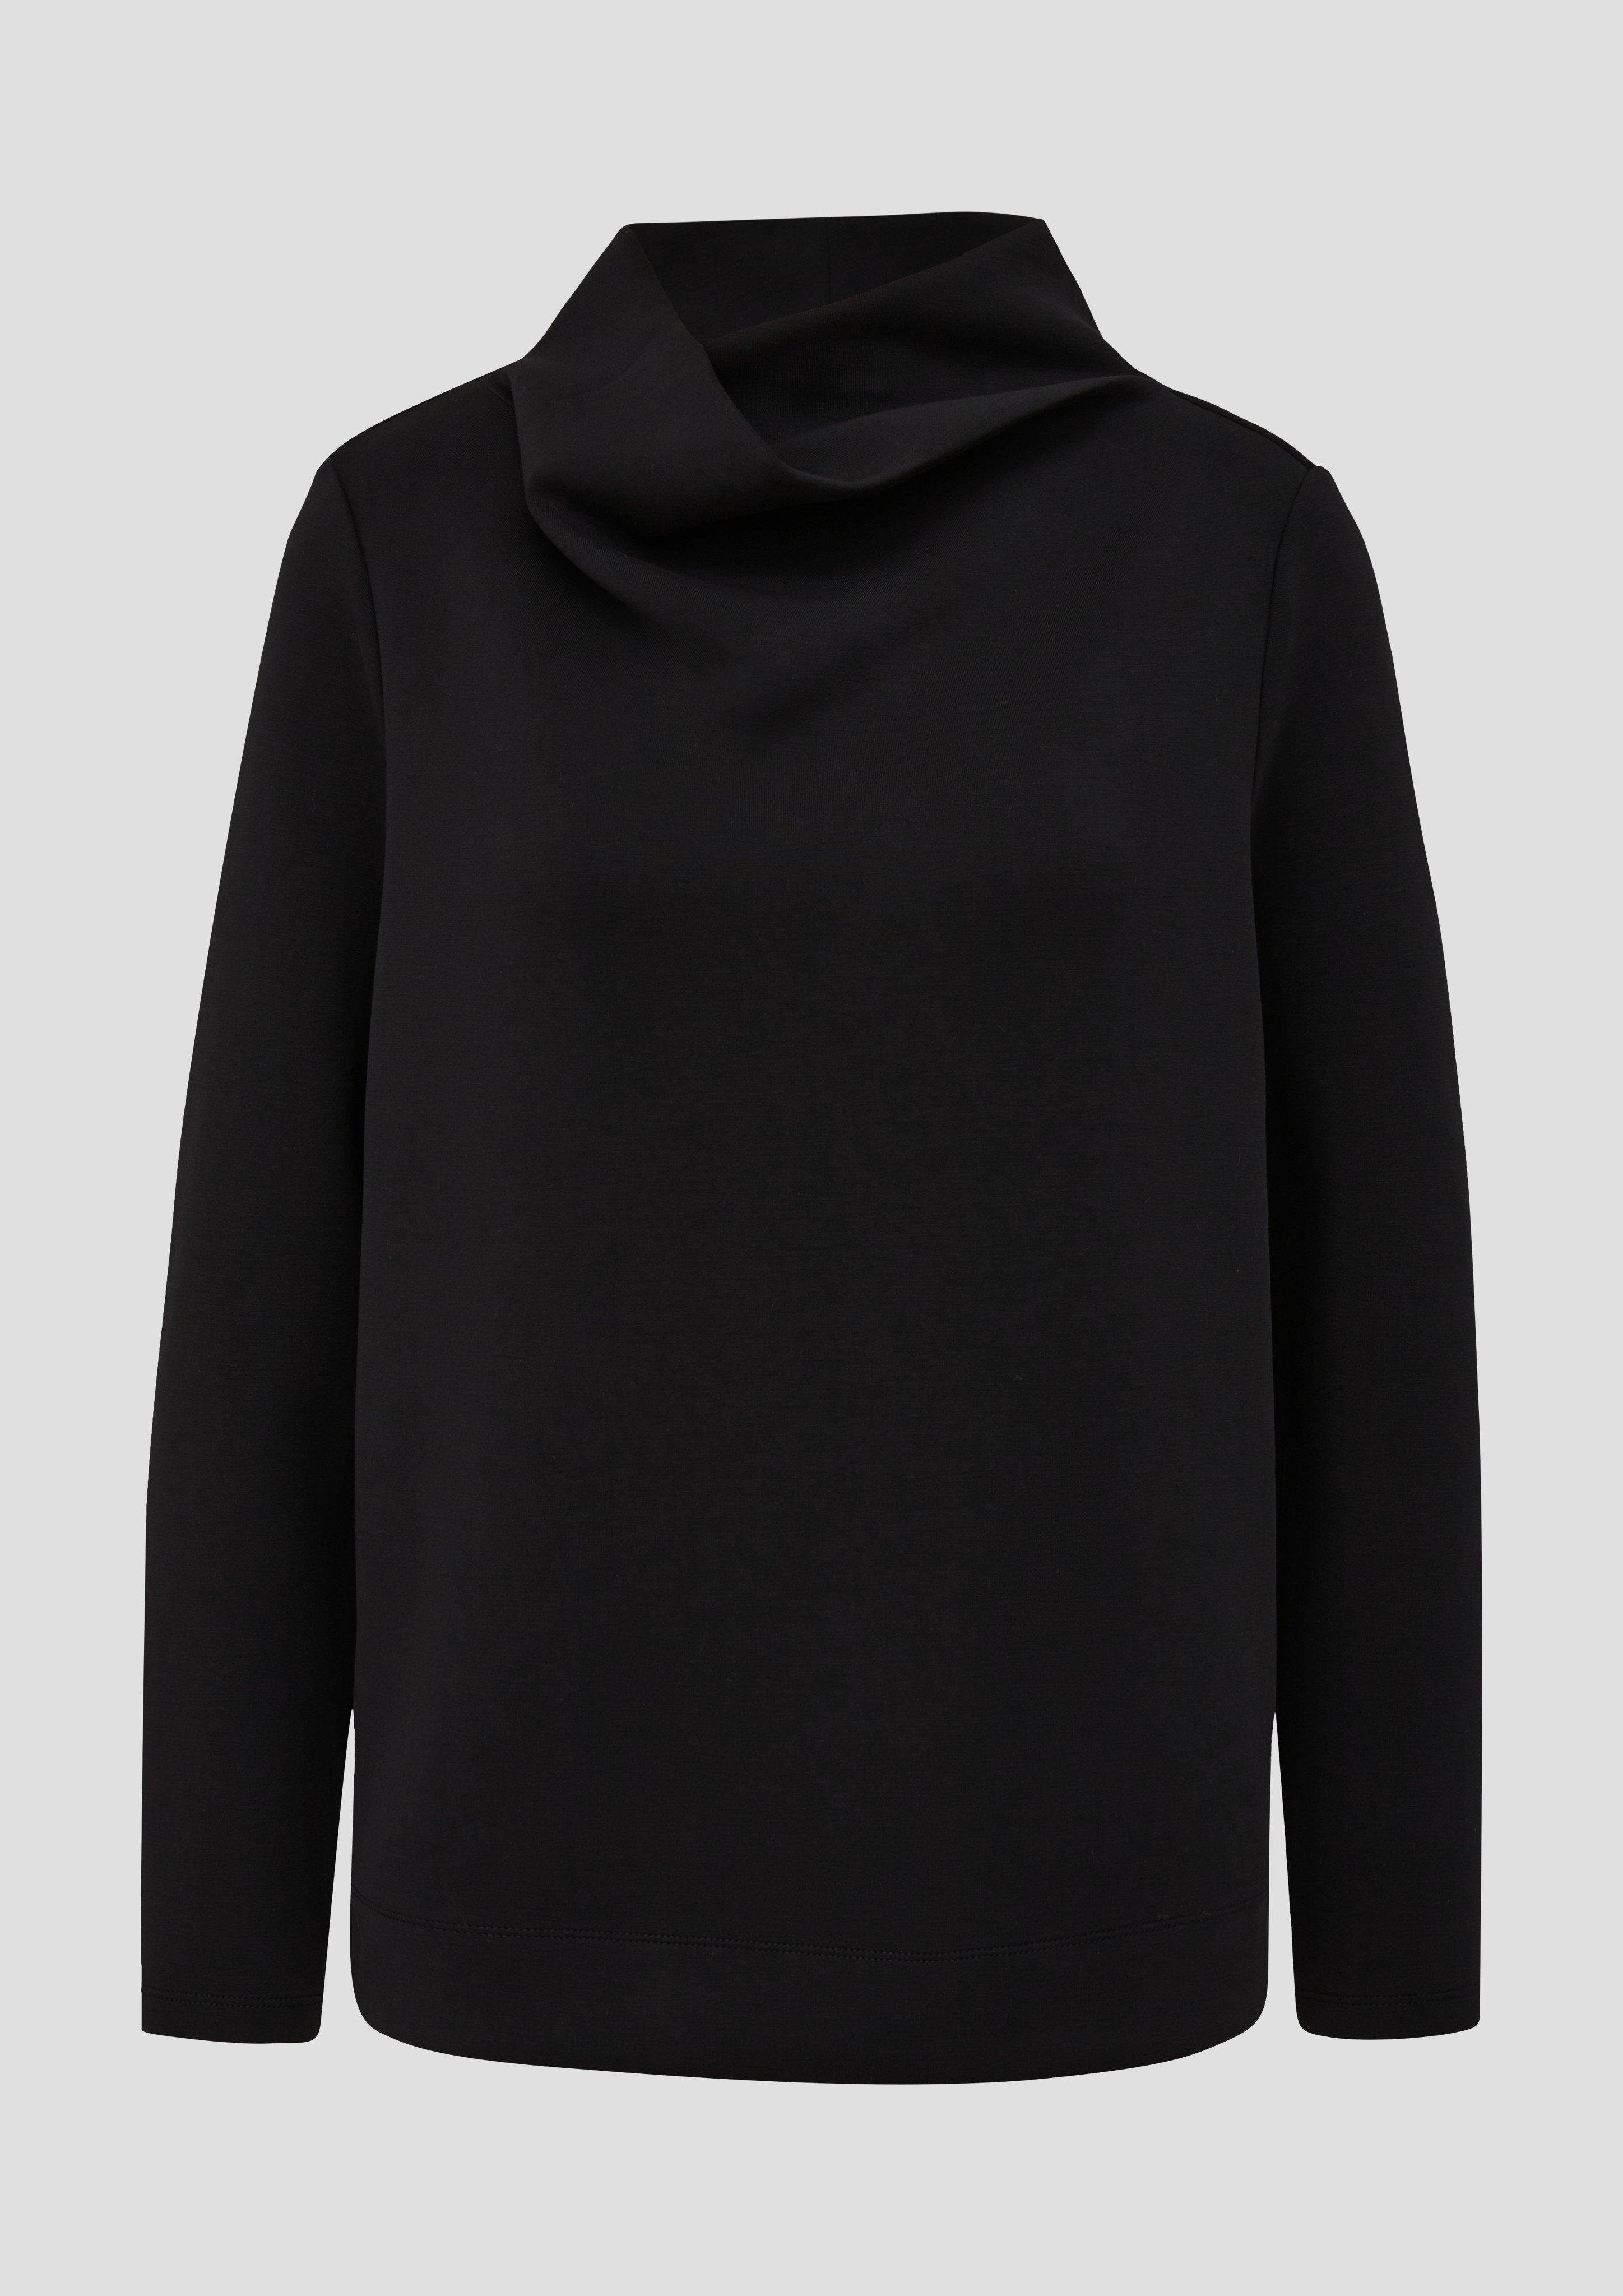 Scuba-Sweatshirt Kragen schwarz mit Sweatshirt s.Oliver drapiertem